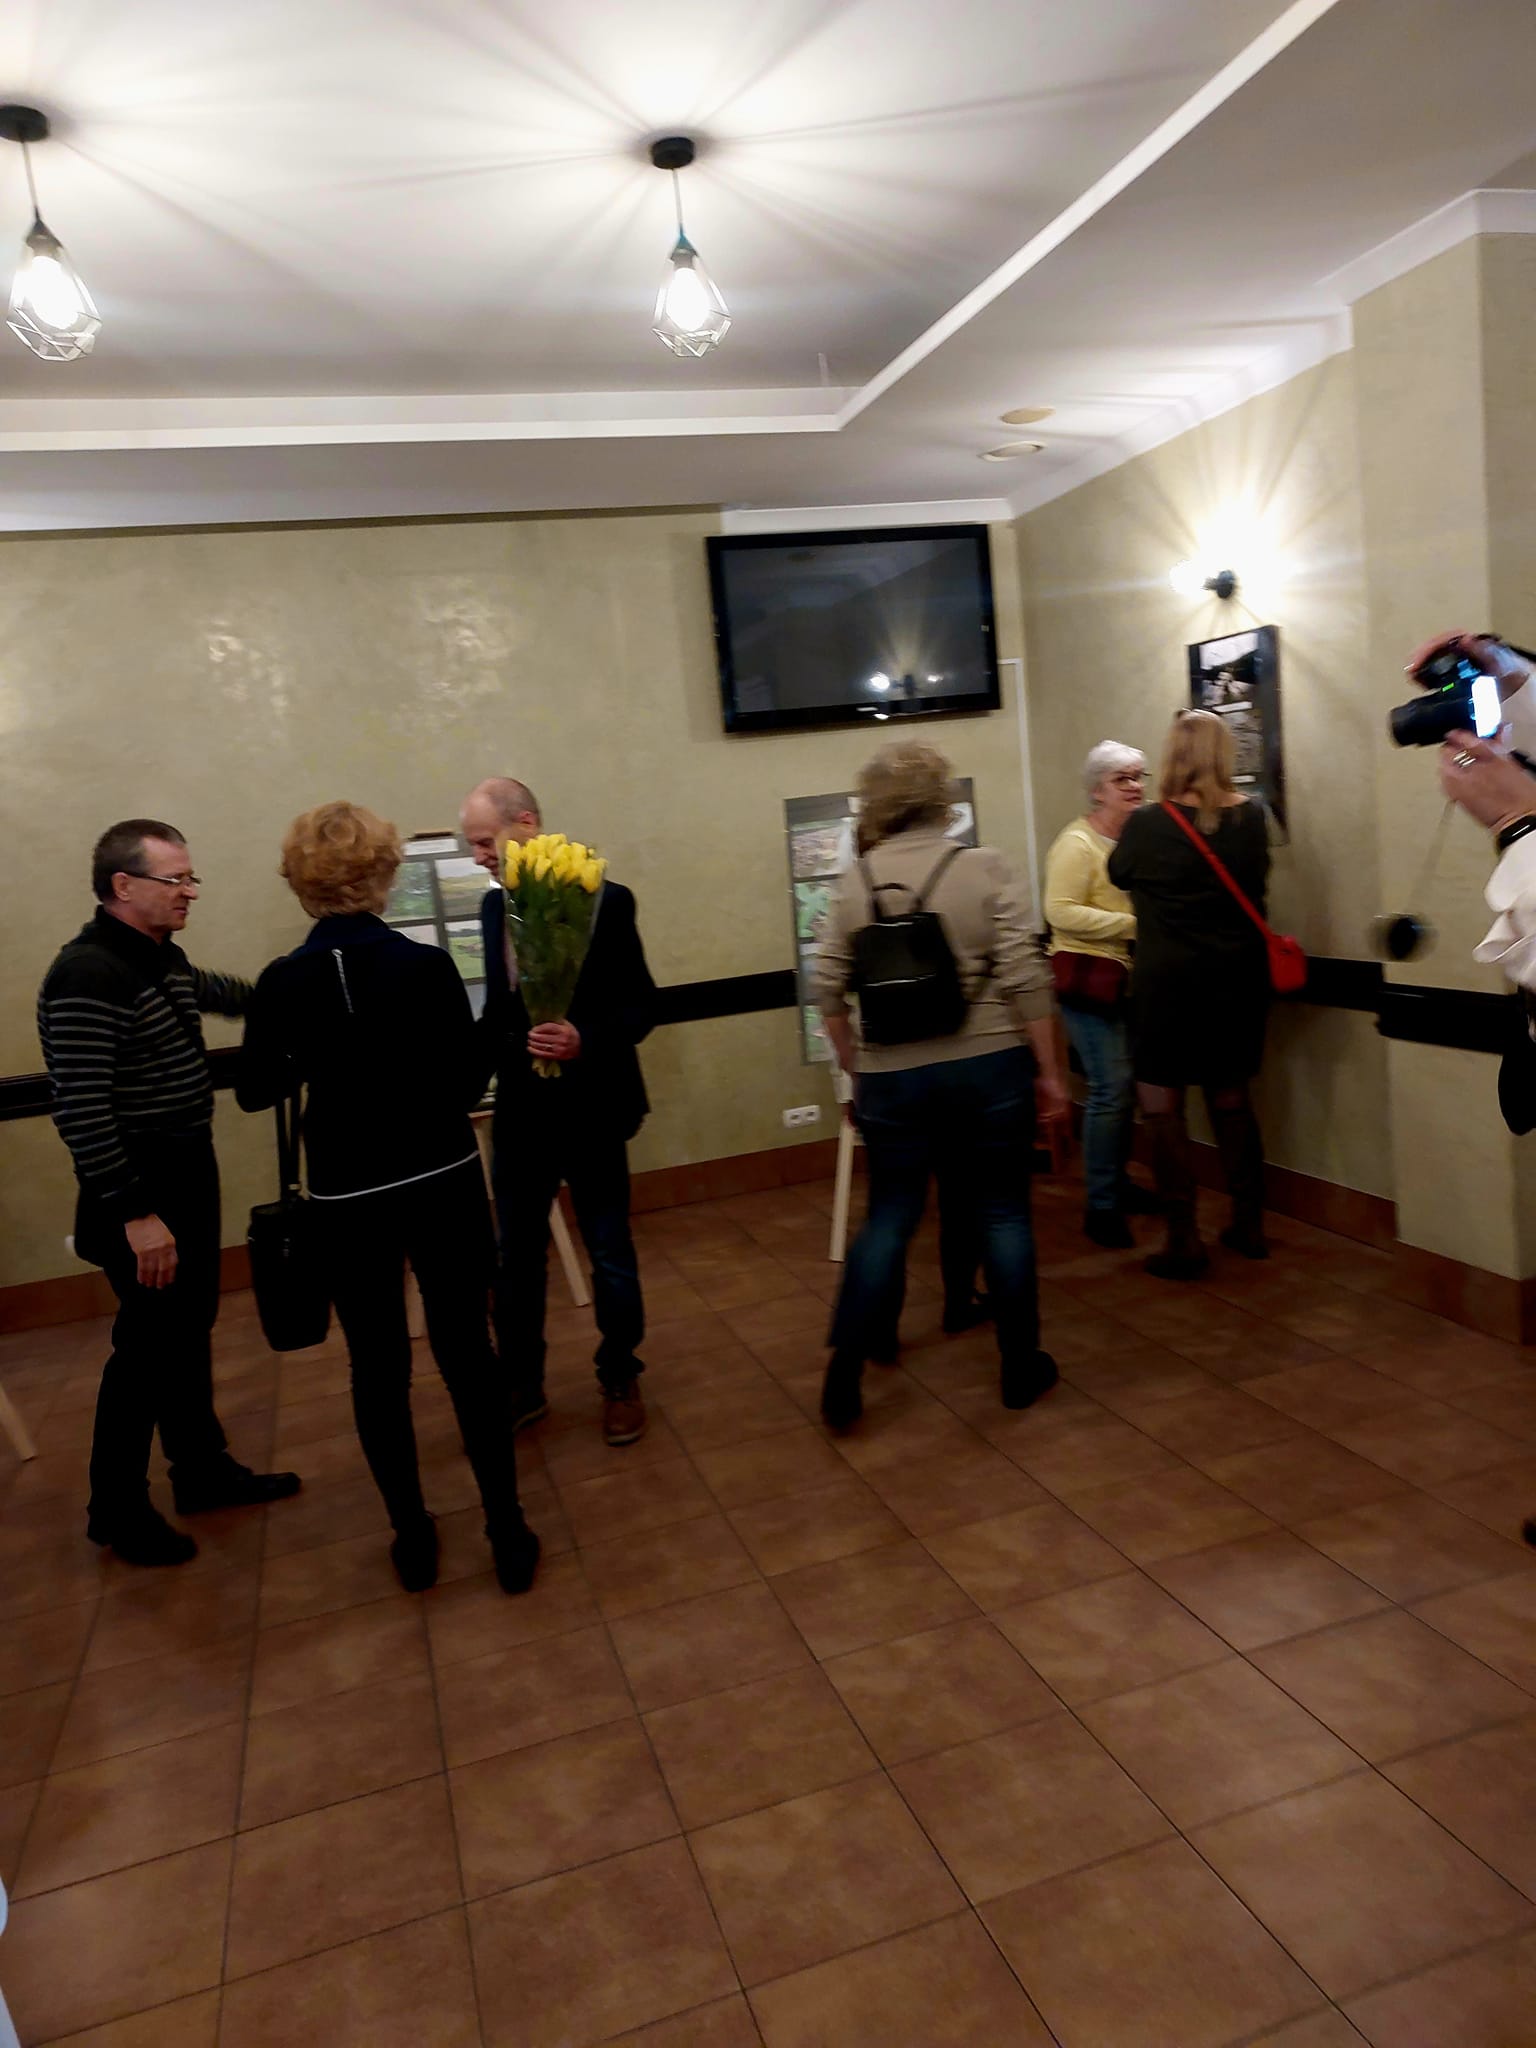 Die Besucher betrachten die Fotoausstellung mit Interesse.